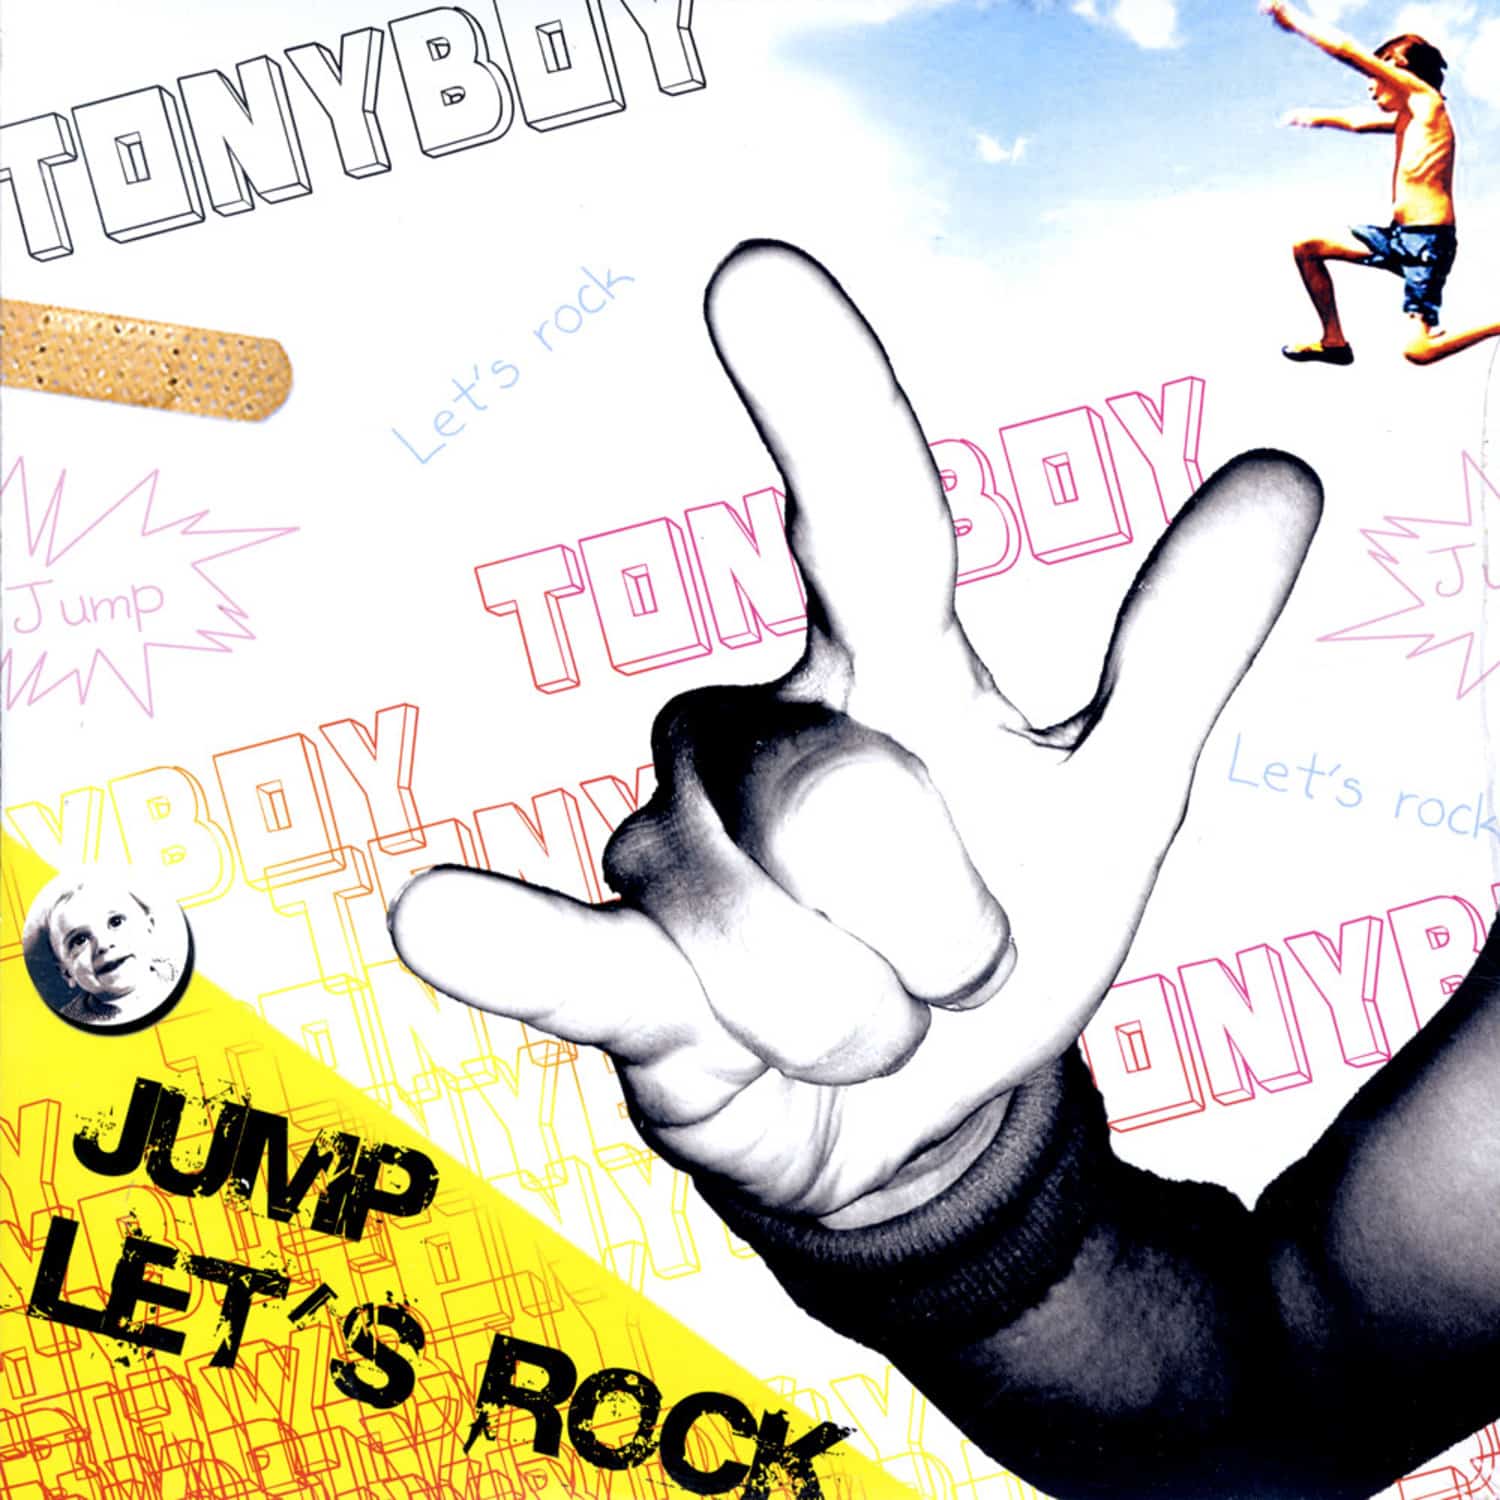 Tonyboy - JUMP/ LETS ROCK